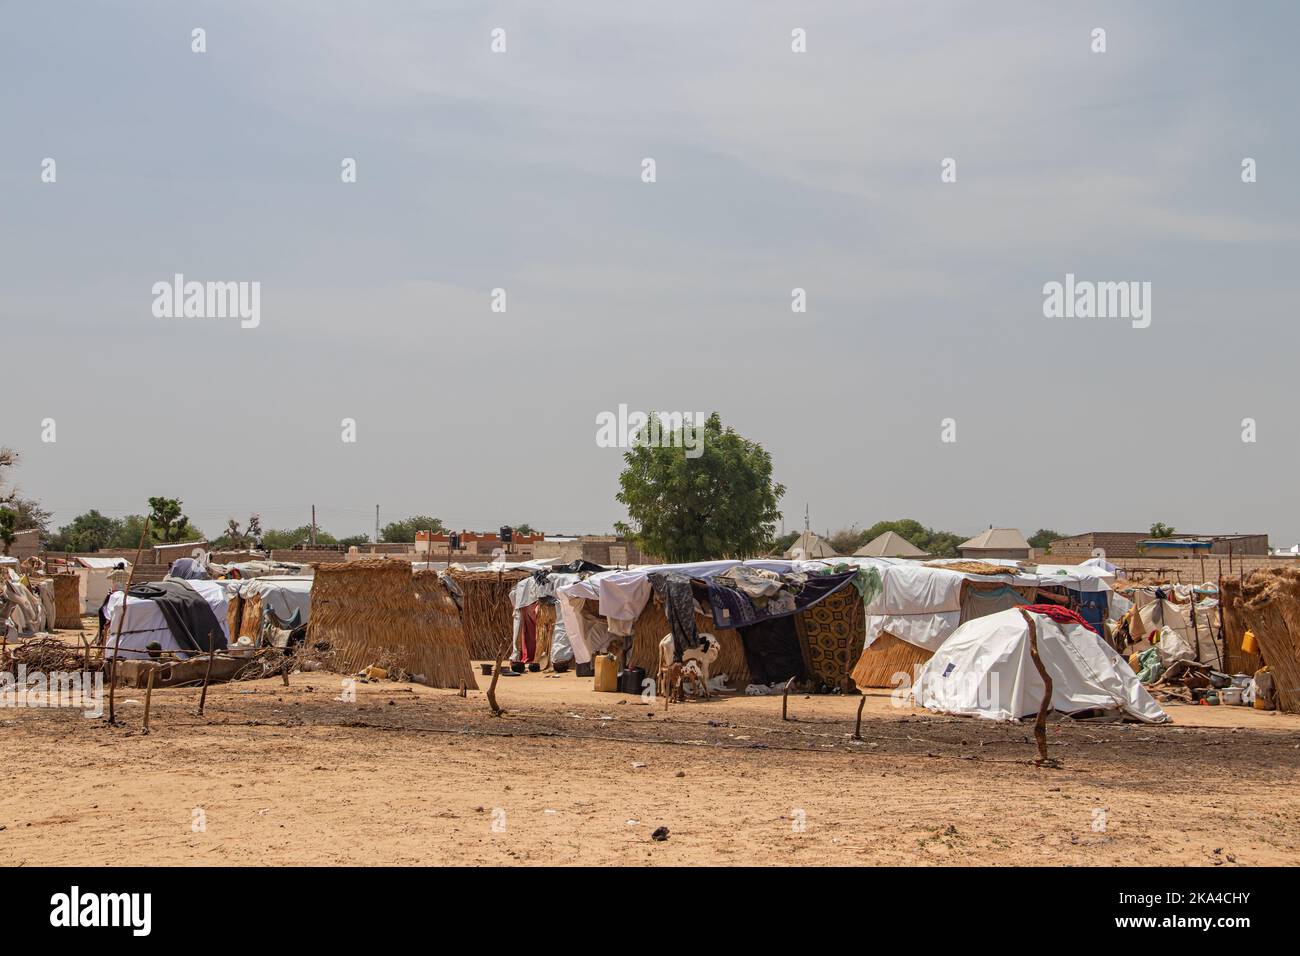 Camp de réfugiés en Afrique, rempli de personnes qui se sont réfugiées en raison de l'insécurité et des conflits armés. Personnes vivant dans des conditions très mauvaises Banque D'Images